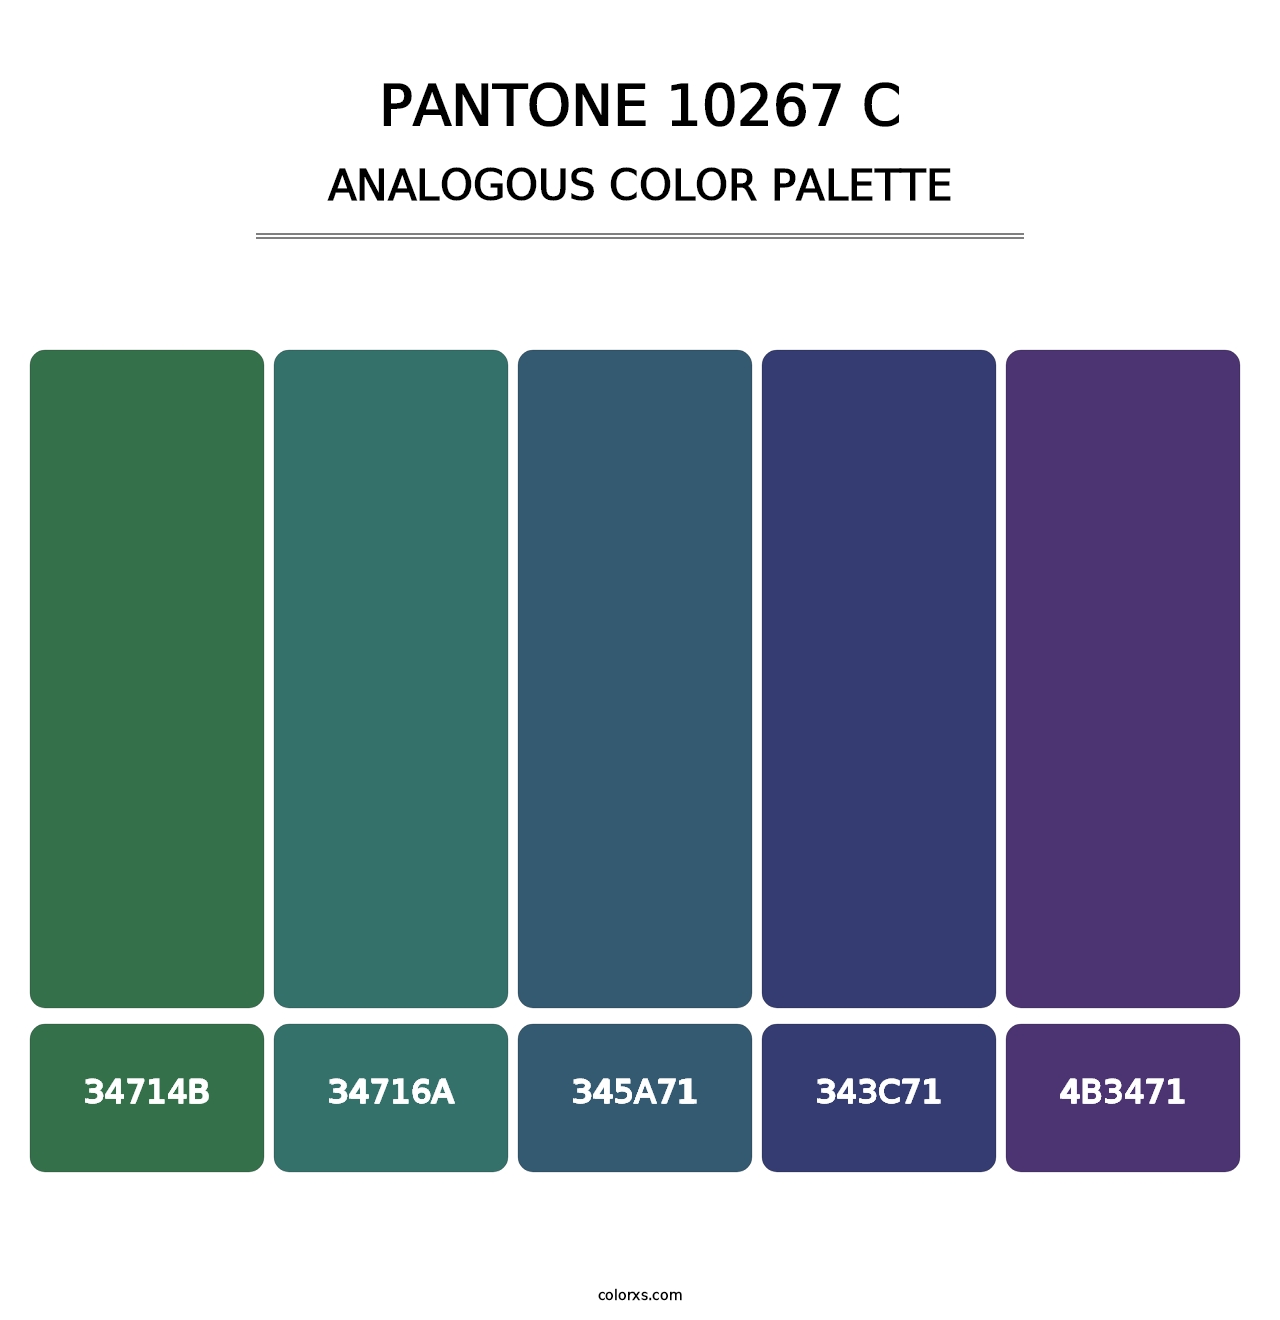 PANTONE 10267 C - Analogous Color Palette